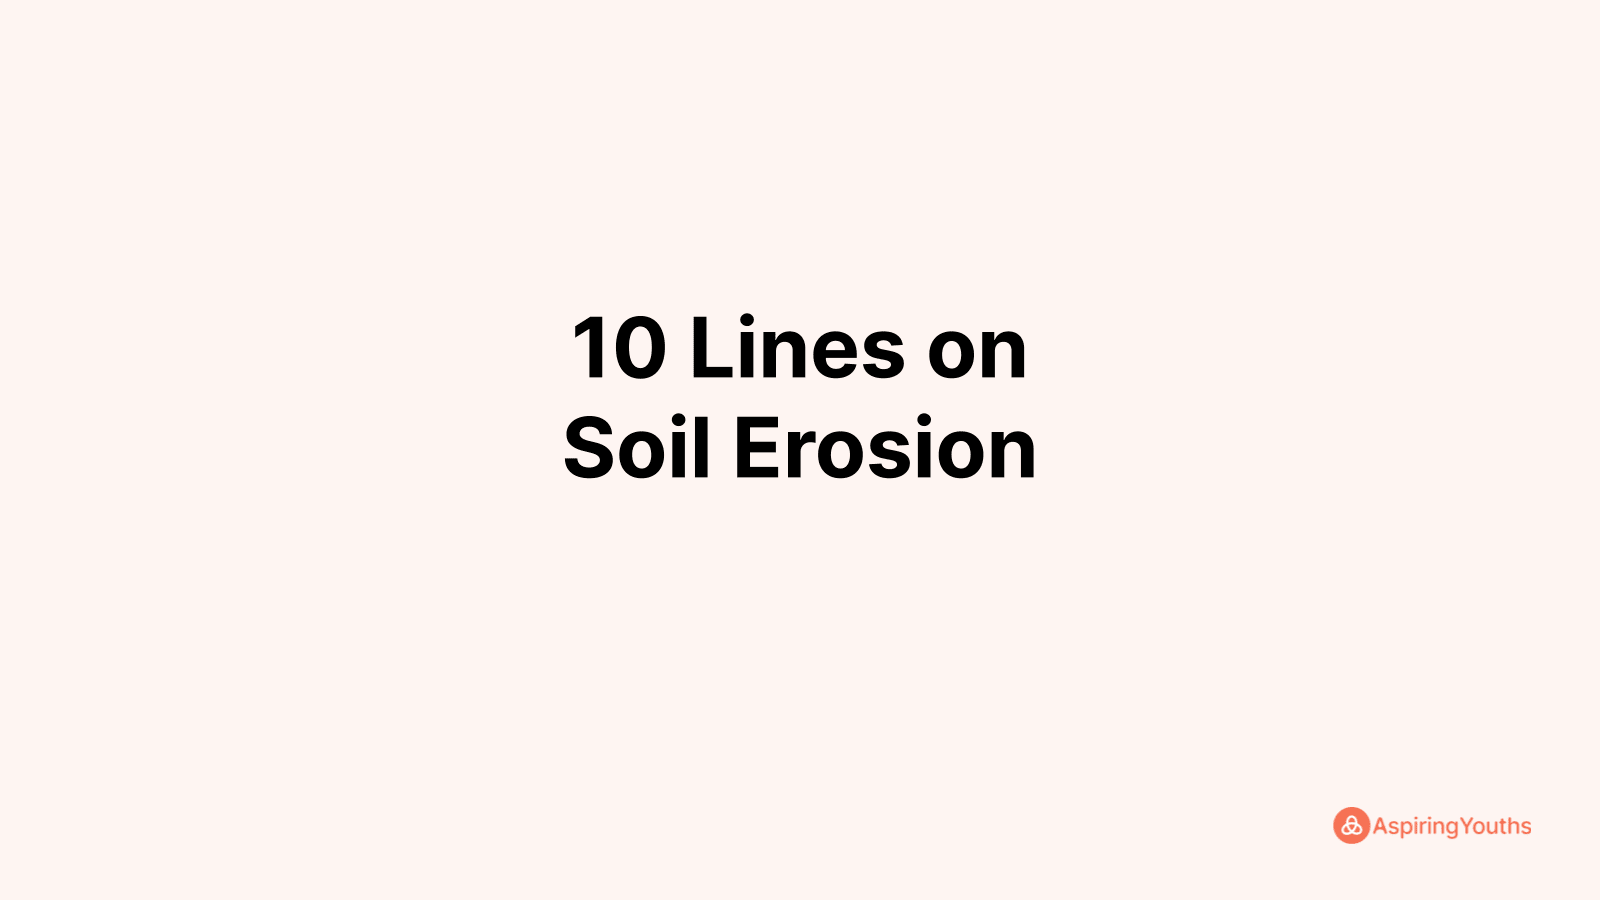 Write 10 Lines on Soil Erosion